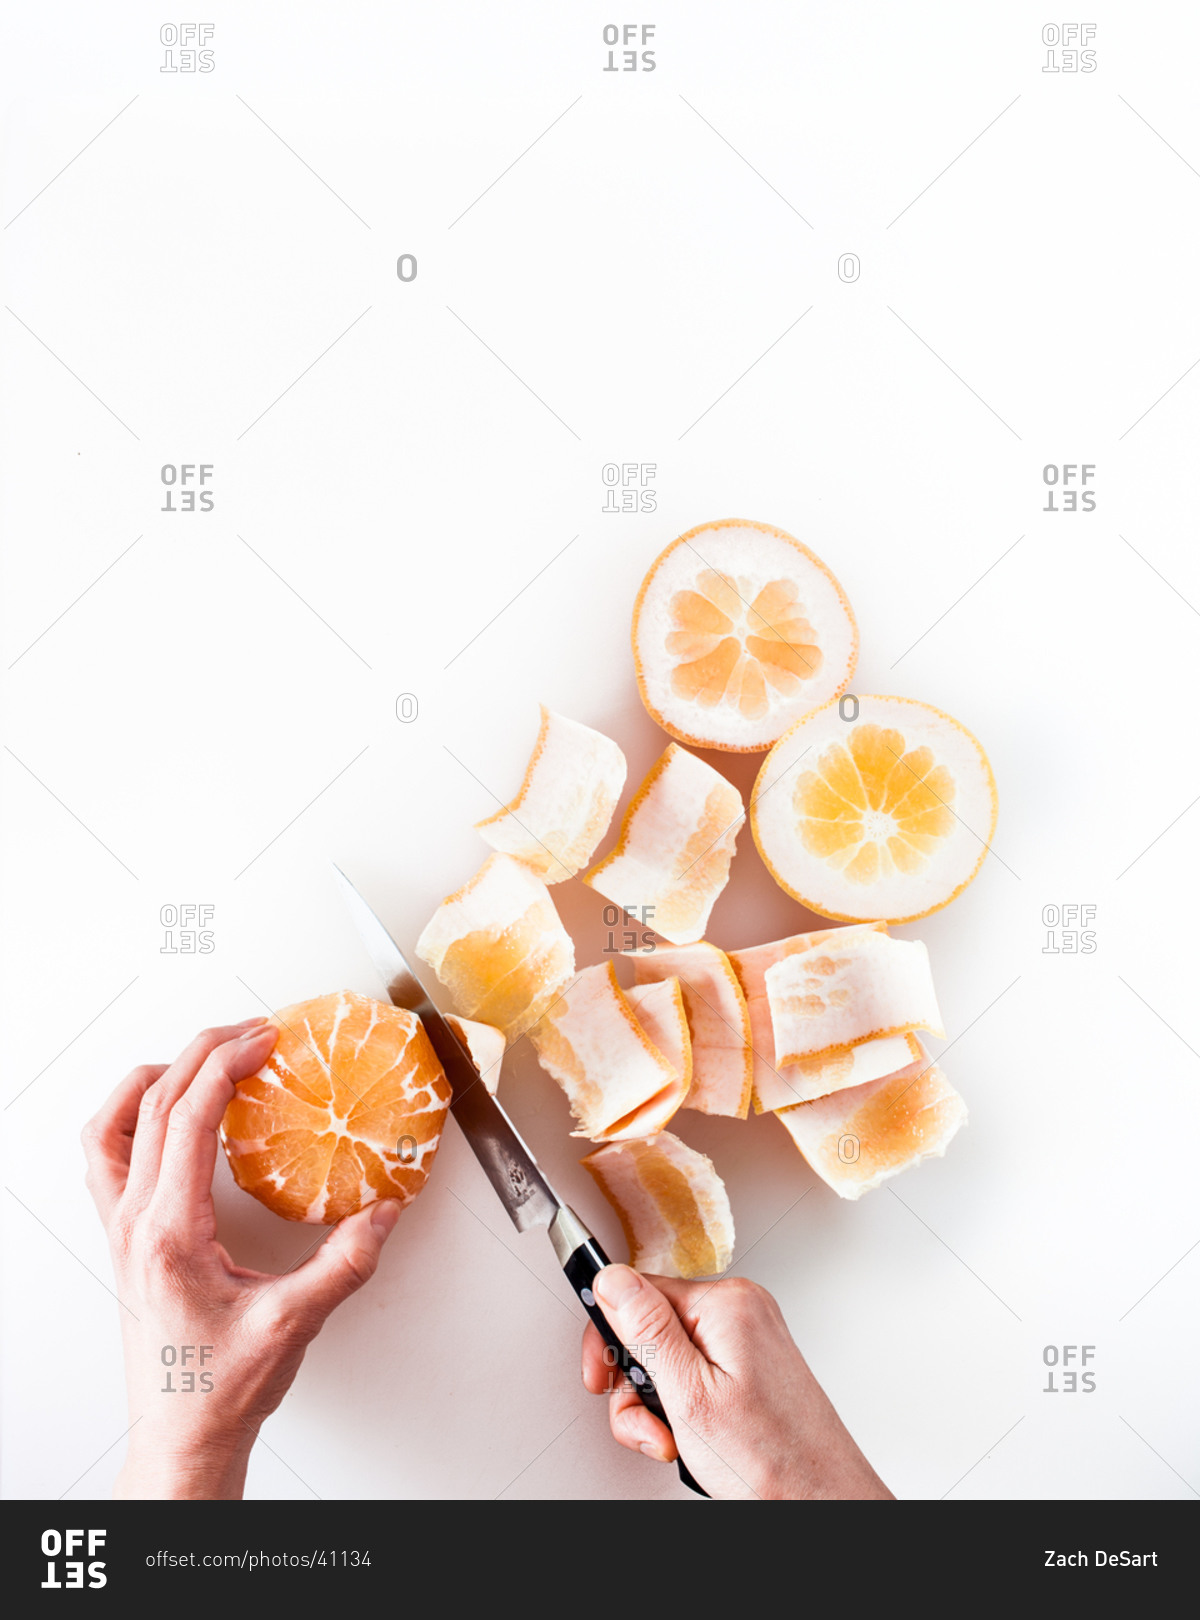 Hands peeling orange with knife on white background